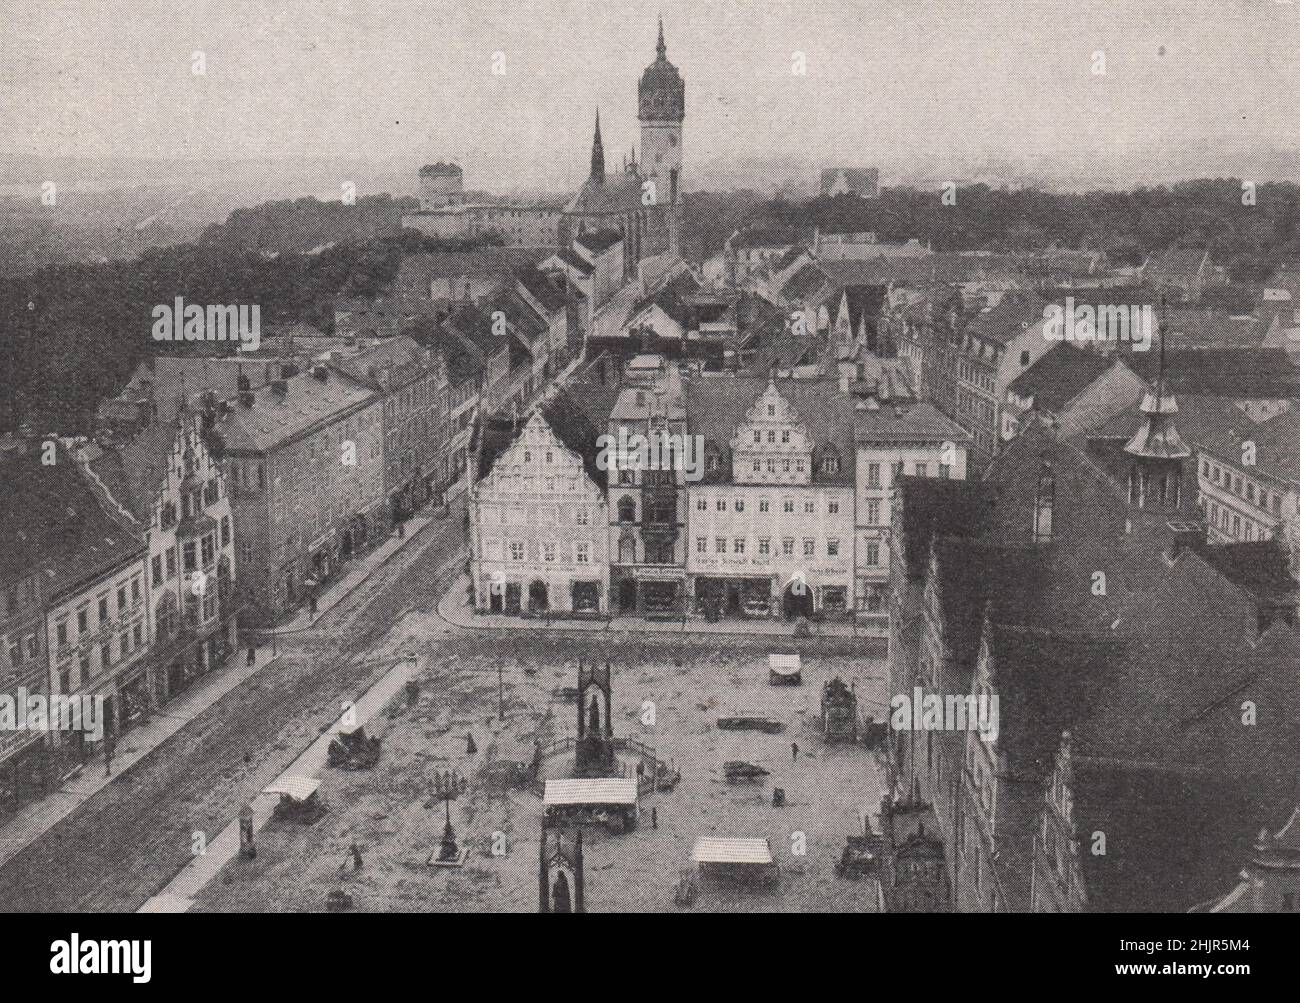 Marktplatz, Wittenberg, eine Industriestadt Preußens. Sachsen-Anhalt. Deutschland (1923) Stockfoto